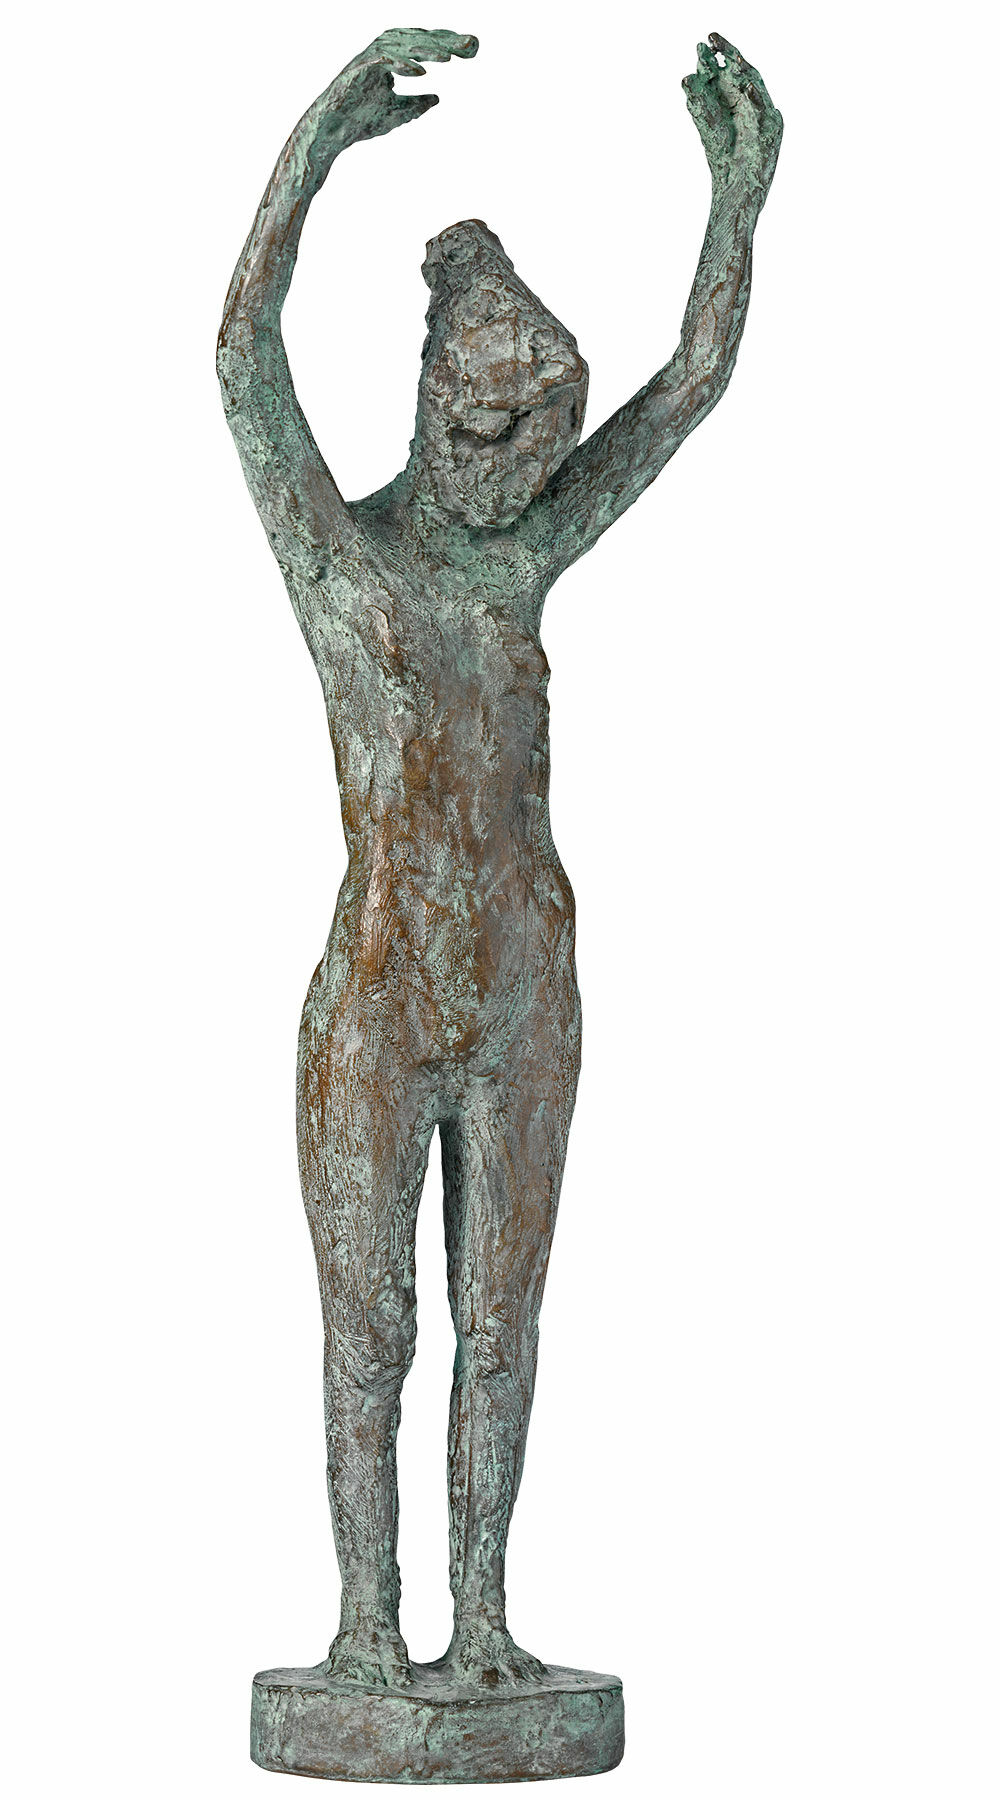 Sculpture "Dancer" (2019), bronze by Thomas Jastram